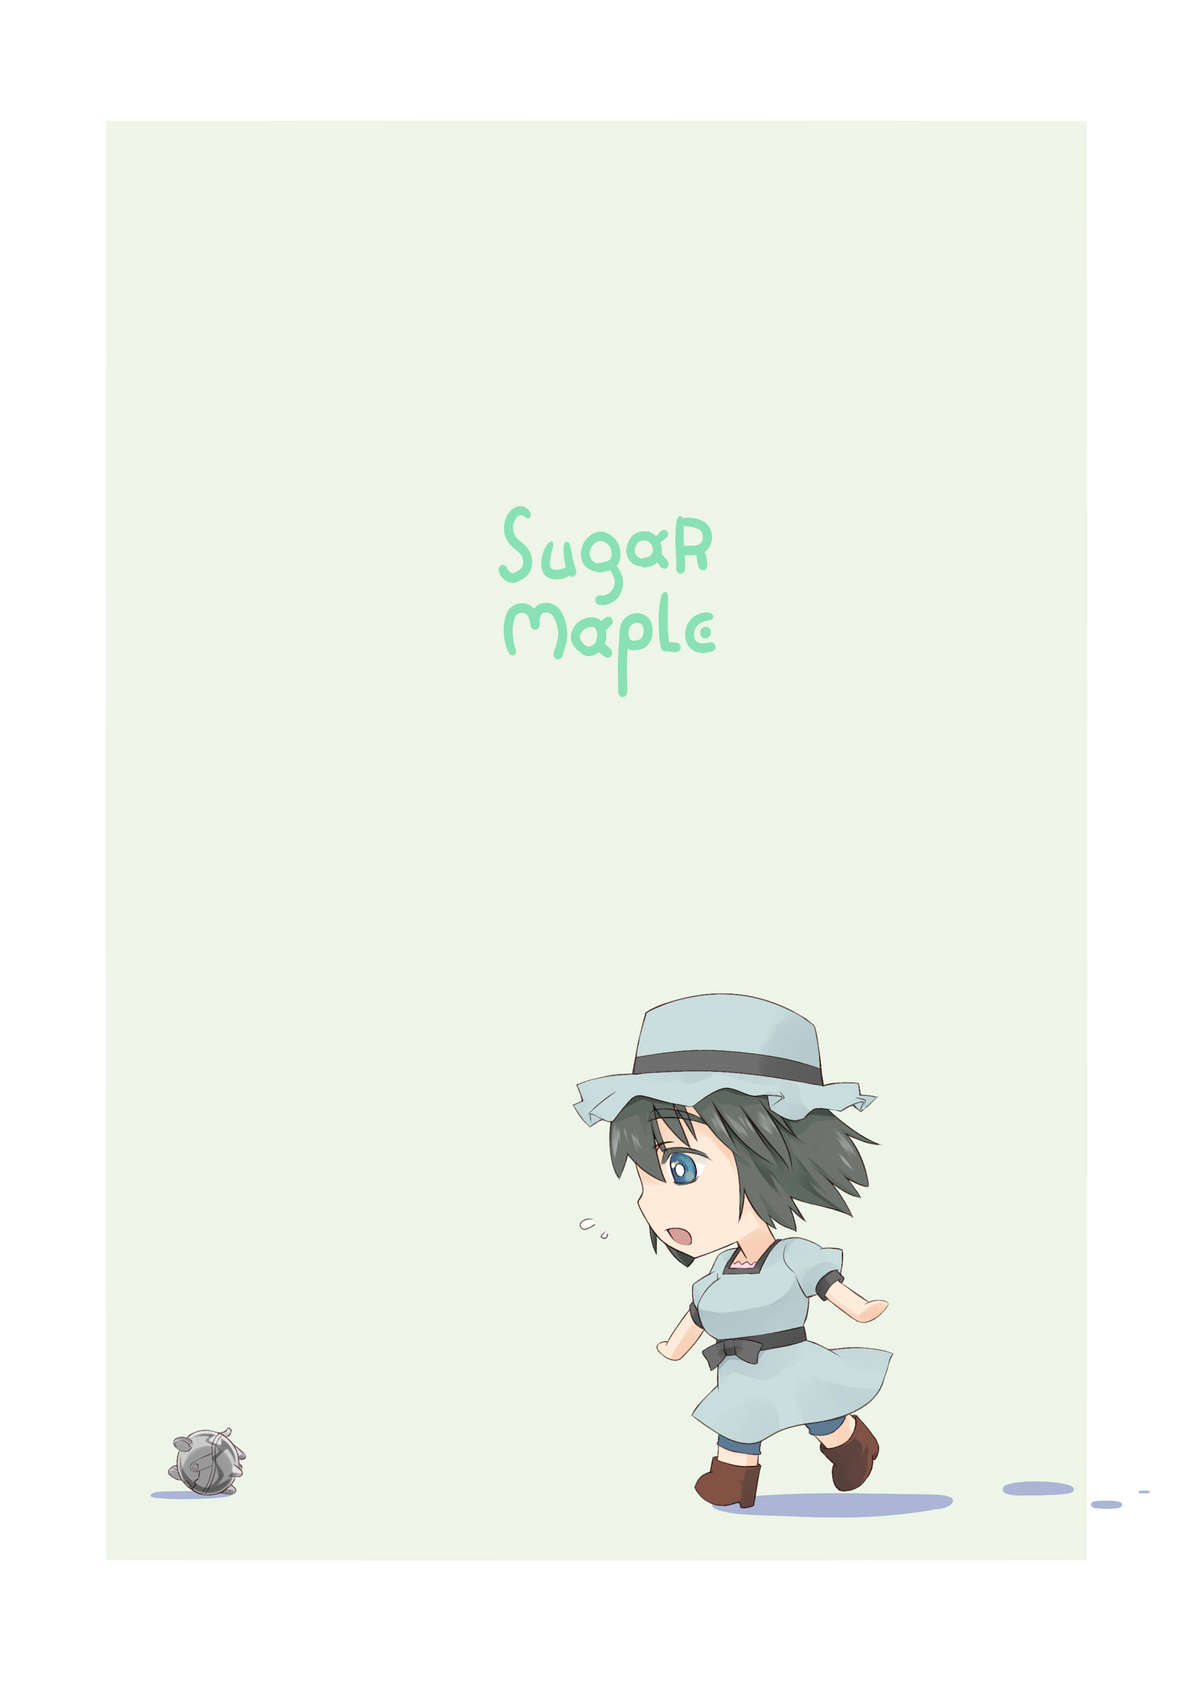 [Sugar Maple] Eco;Gate